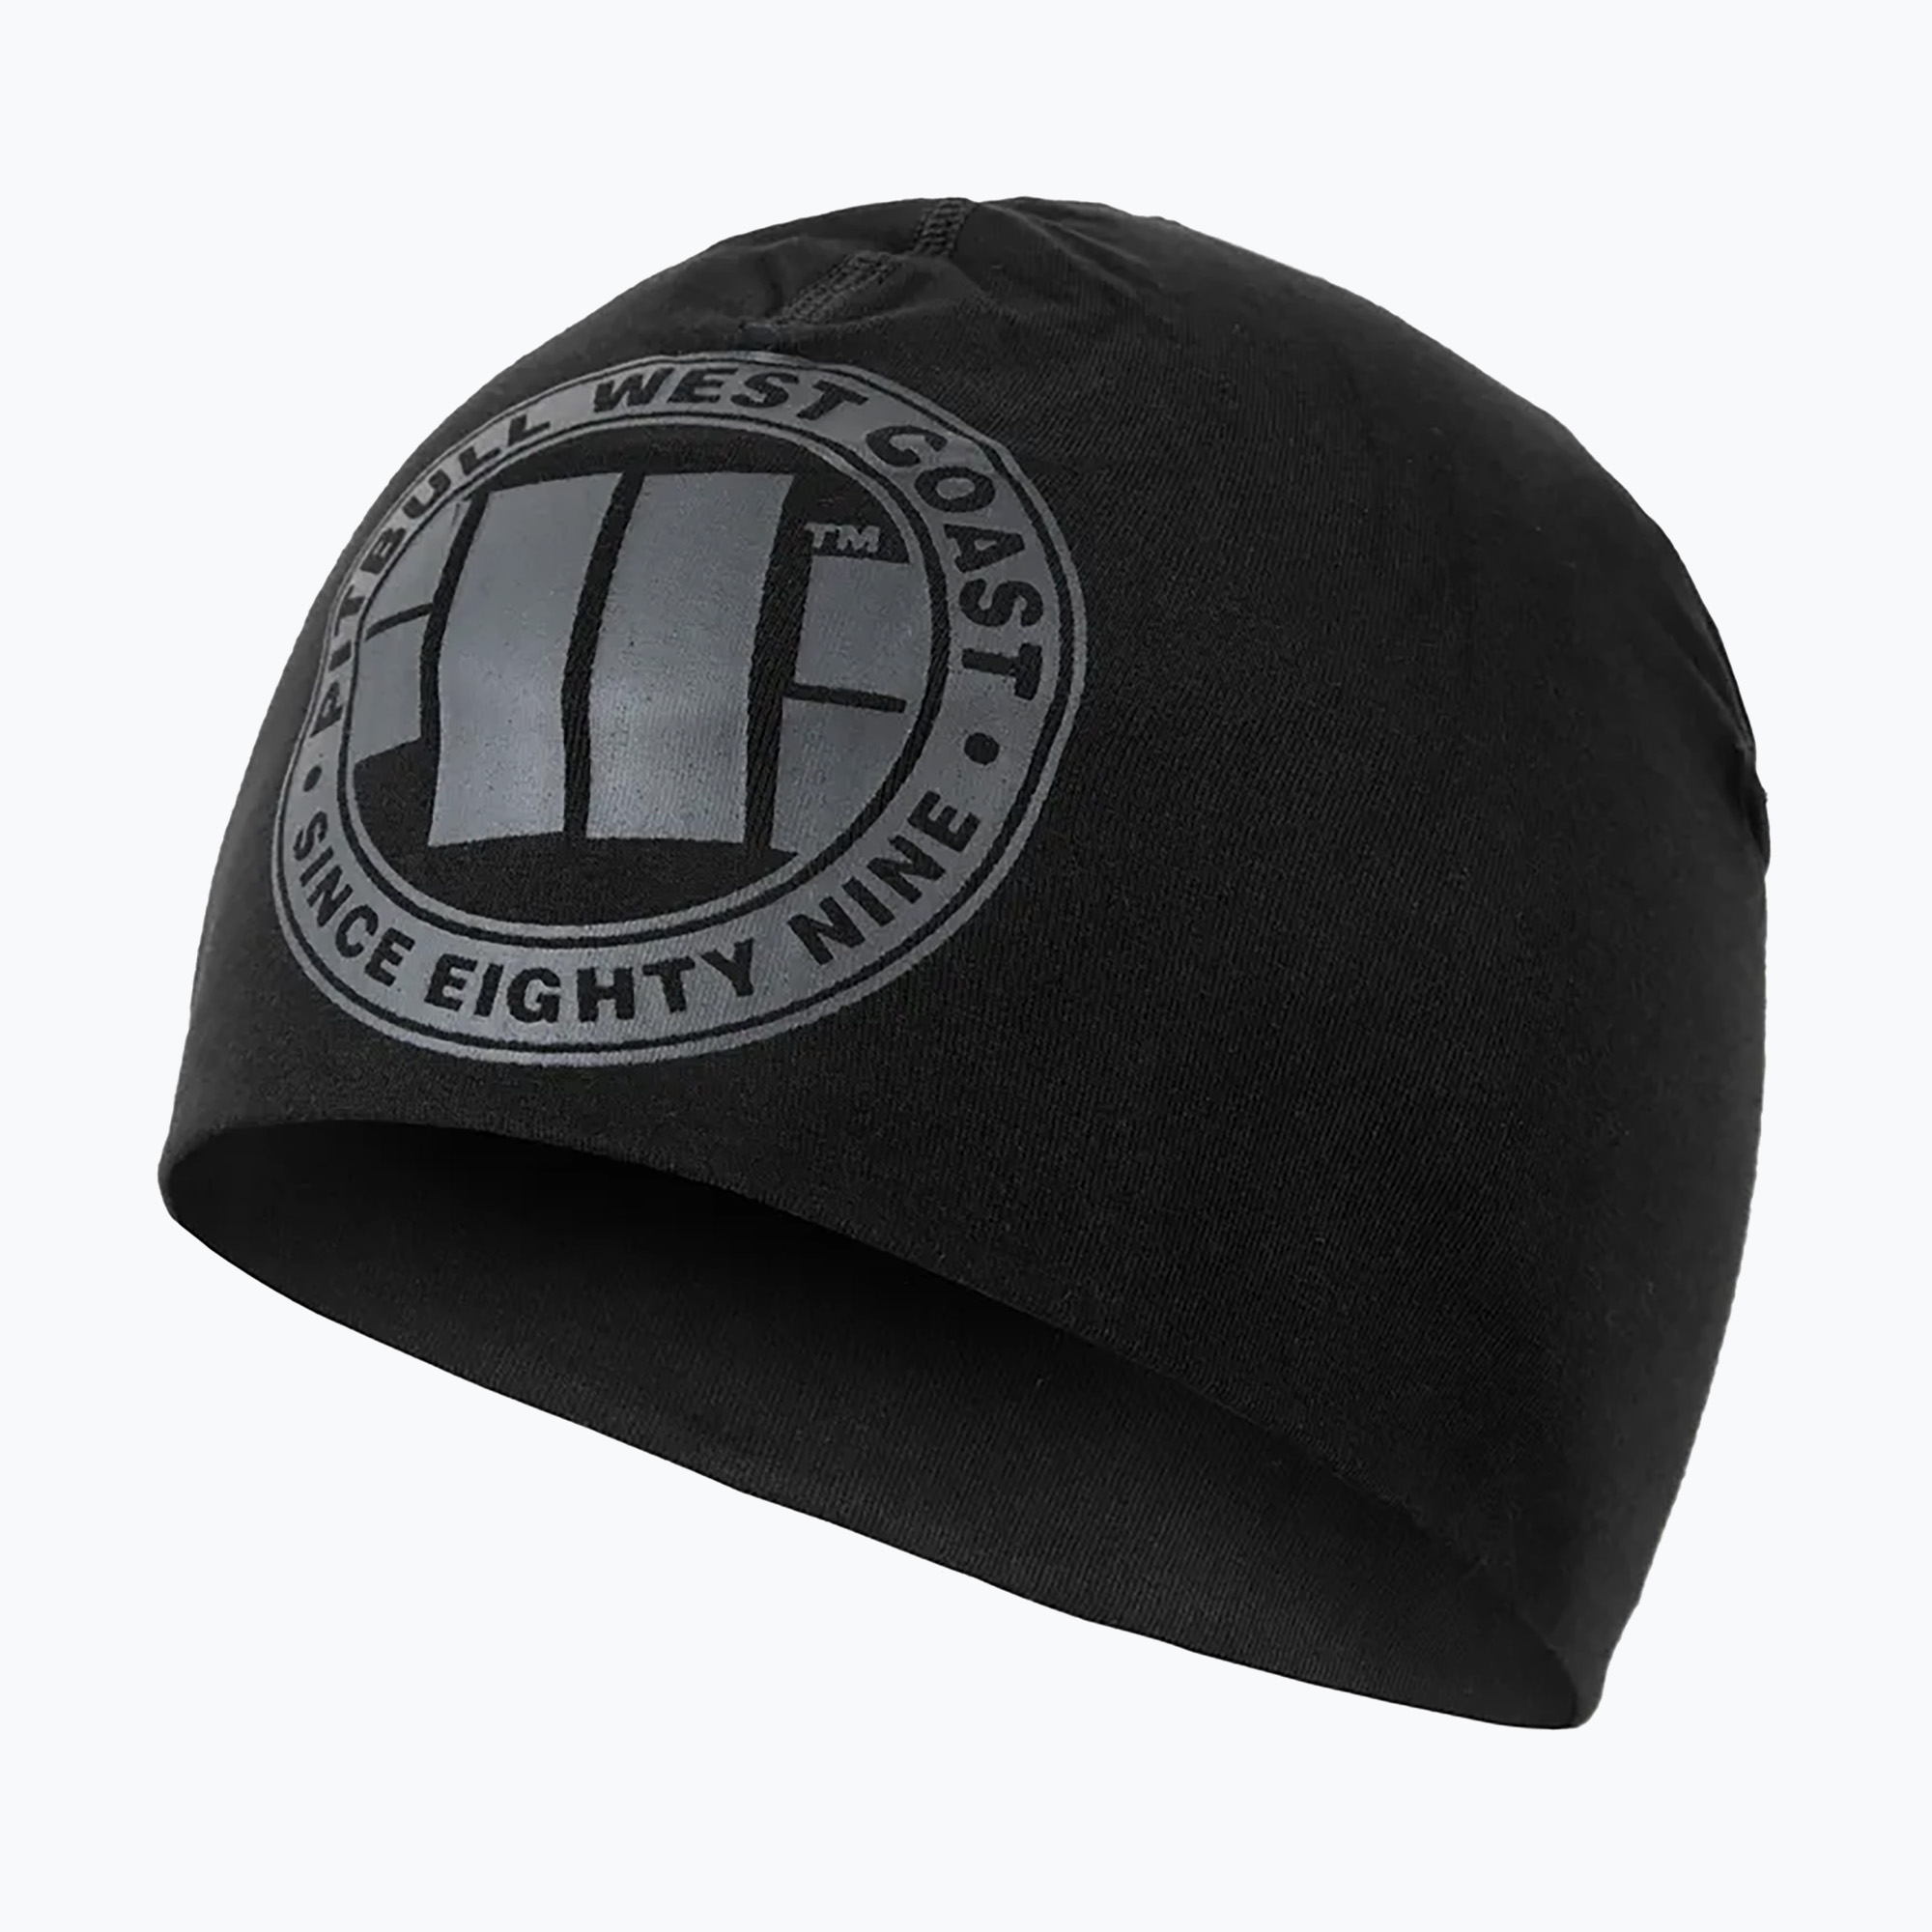 Pitbull West Coast zimná čiapka s veľkým logom black/black